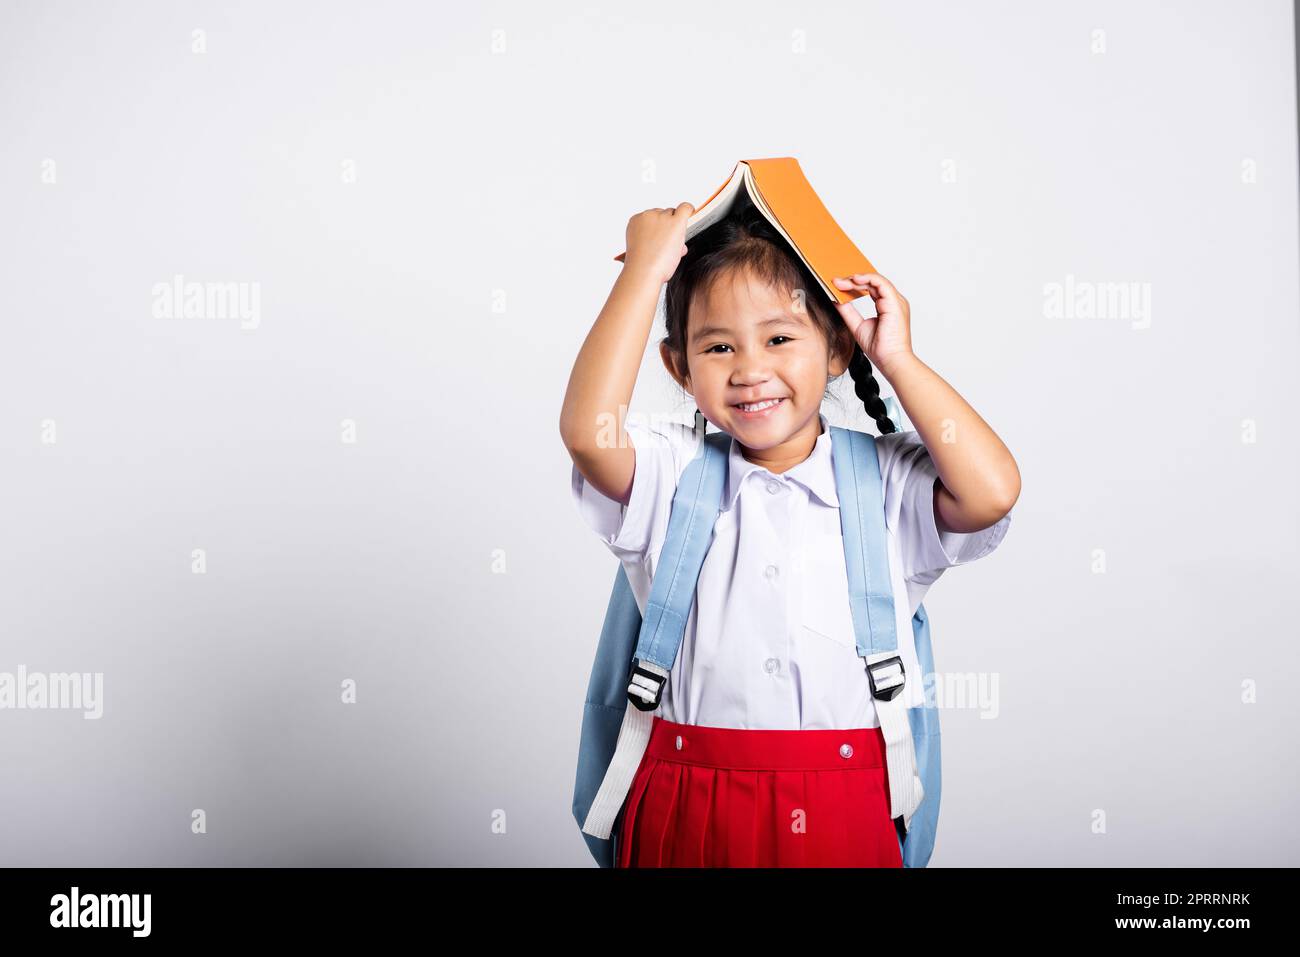 Asiatique adorable tout-petit souriant heureux portant étudiant thaïlandais uniforme rouge jupe stand tenant le livre sur la tête comme le toit Banque D'Images